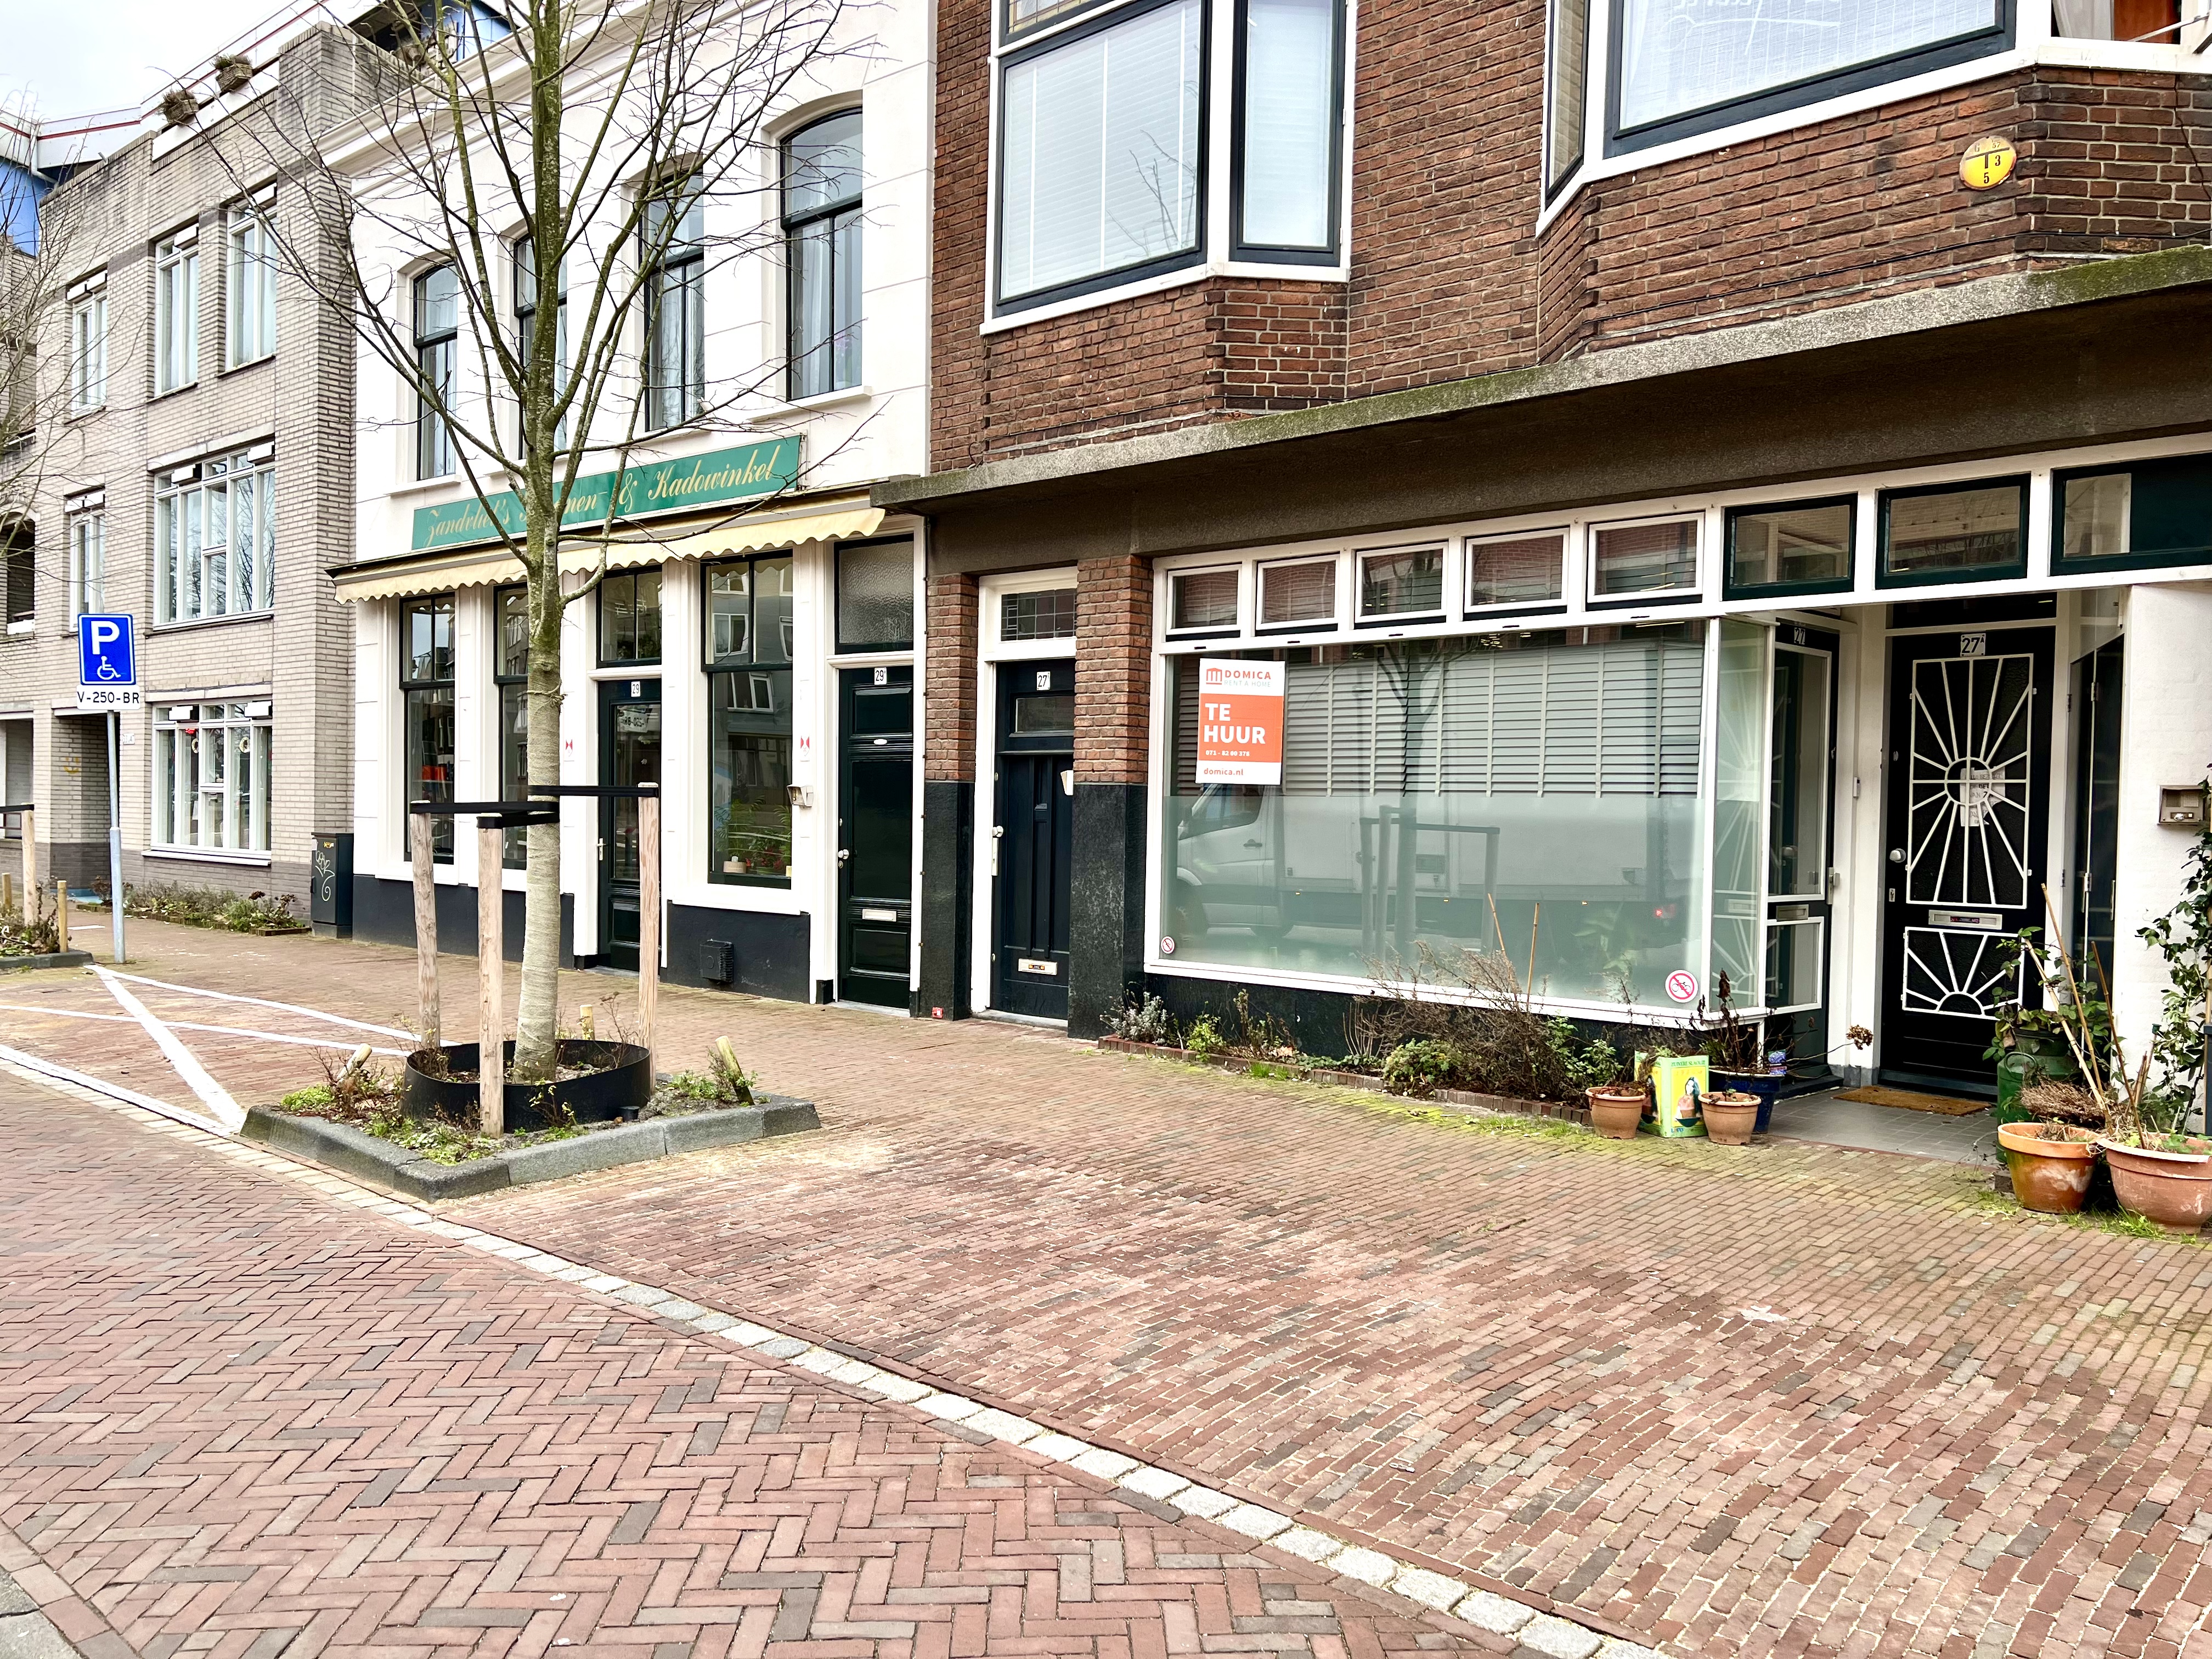 Kamer te huur in de Levendaal in Leiden